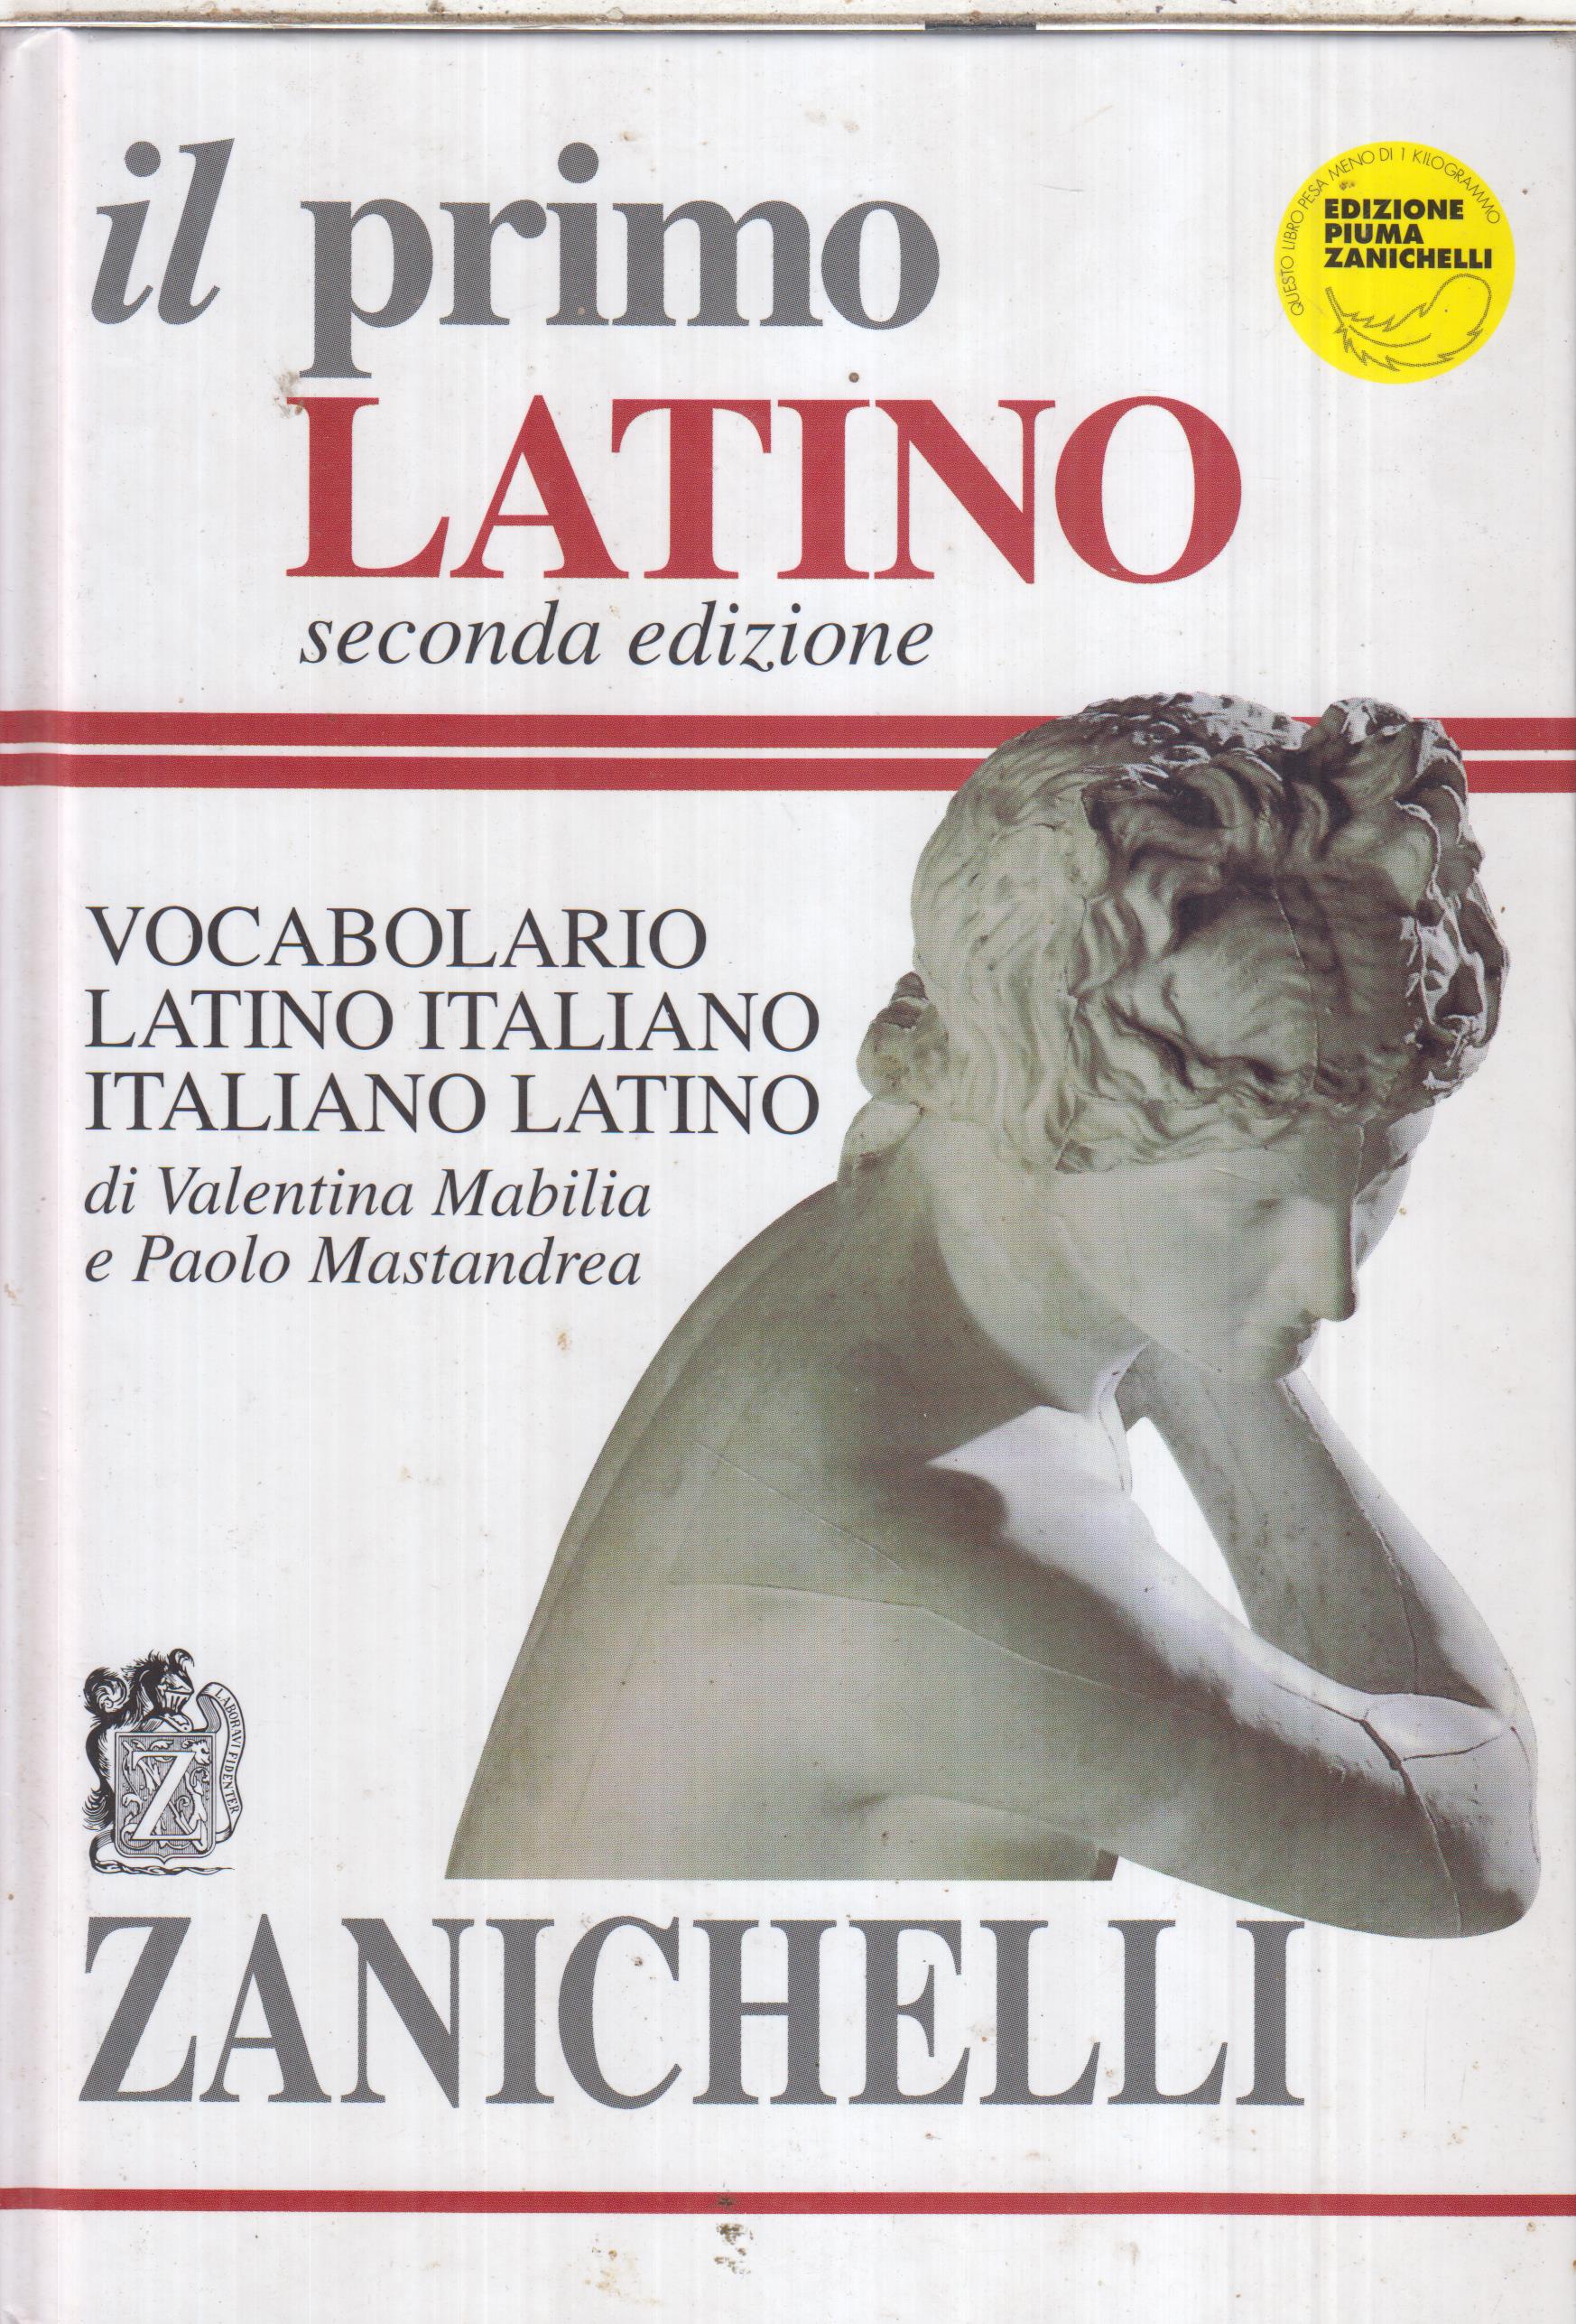 Il primo Latino Vocabolario Latino Italiano-Italiano Latino, V. Mabilia – P. Mastandrea